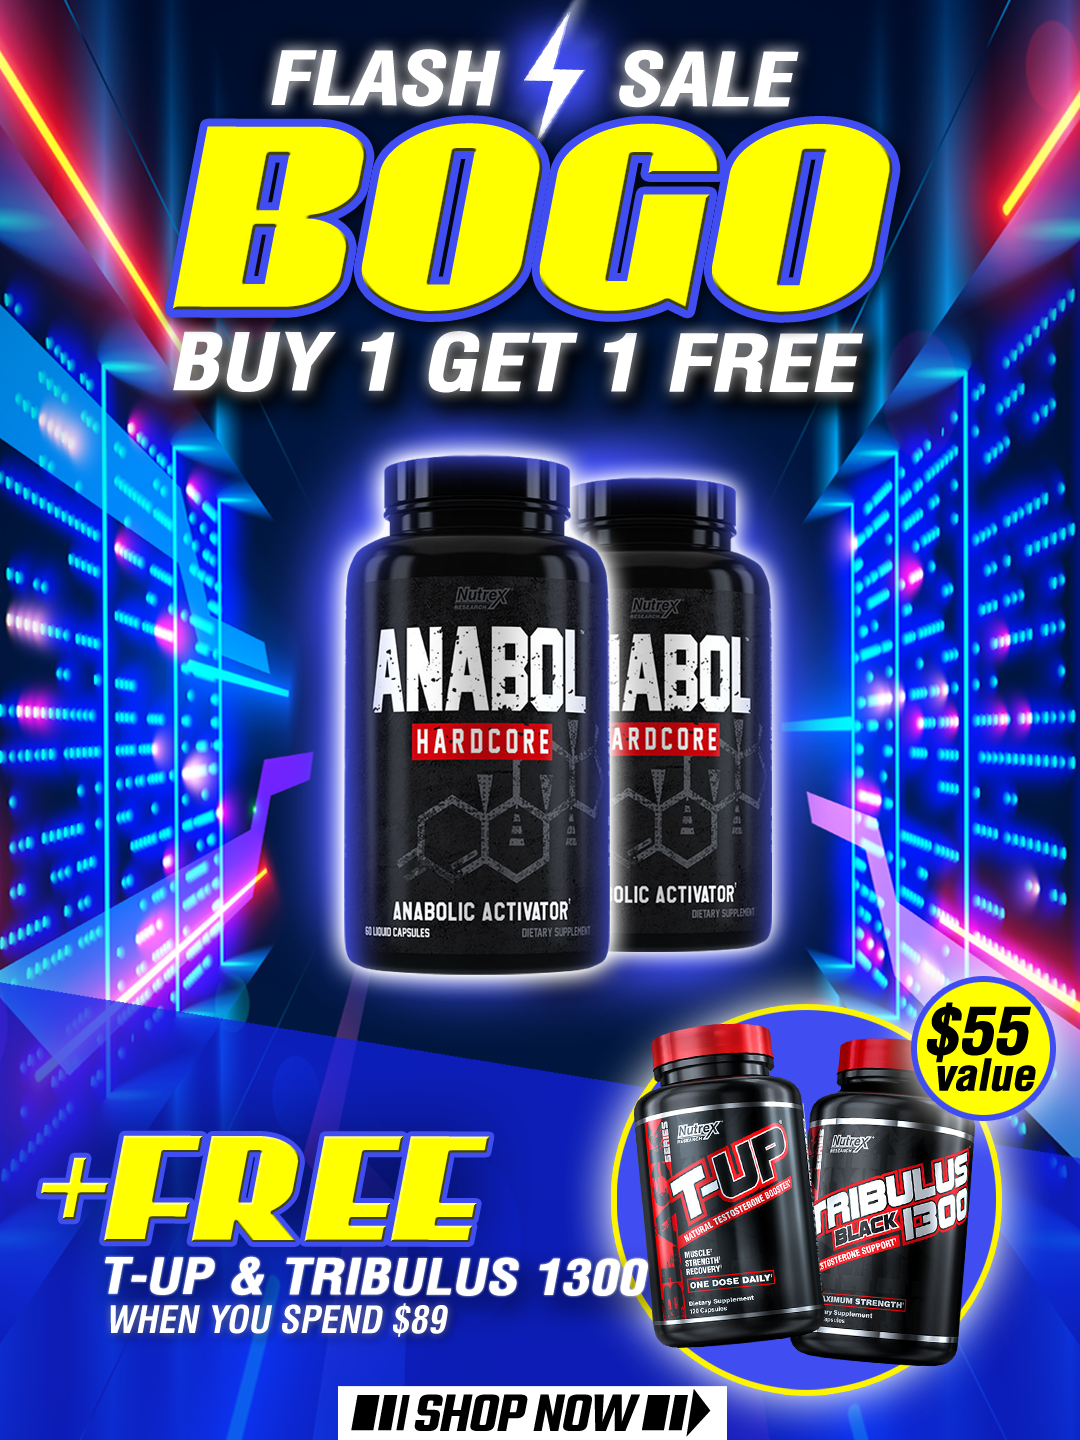 BOGO Free Anabol + Free Gifts